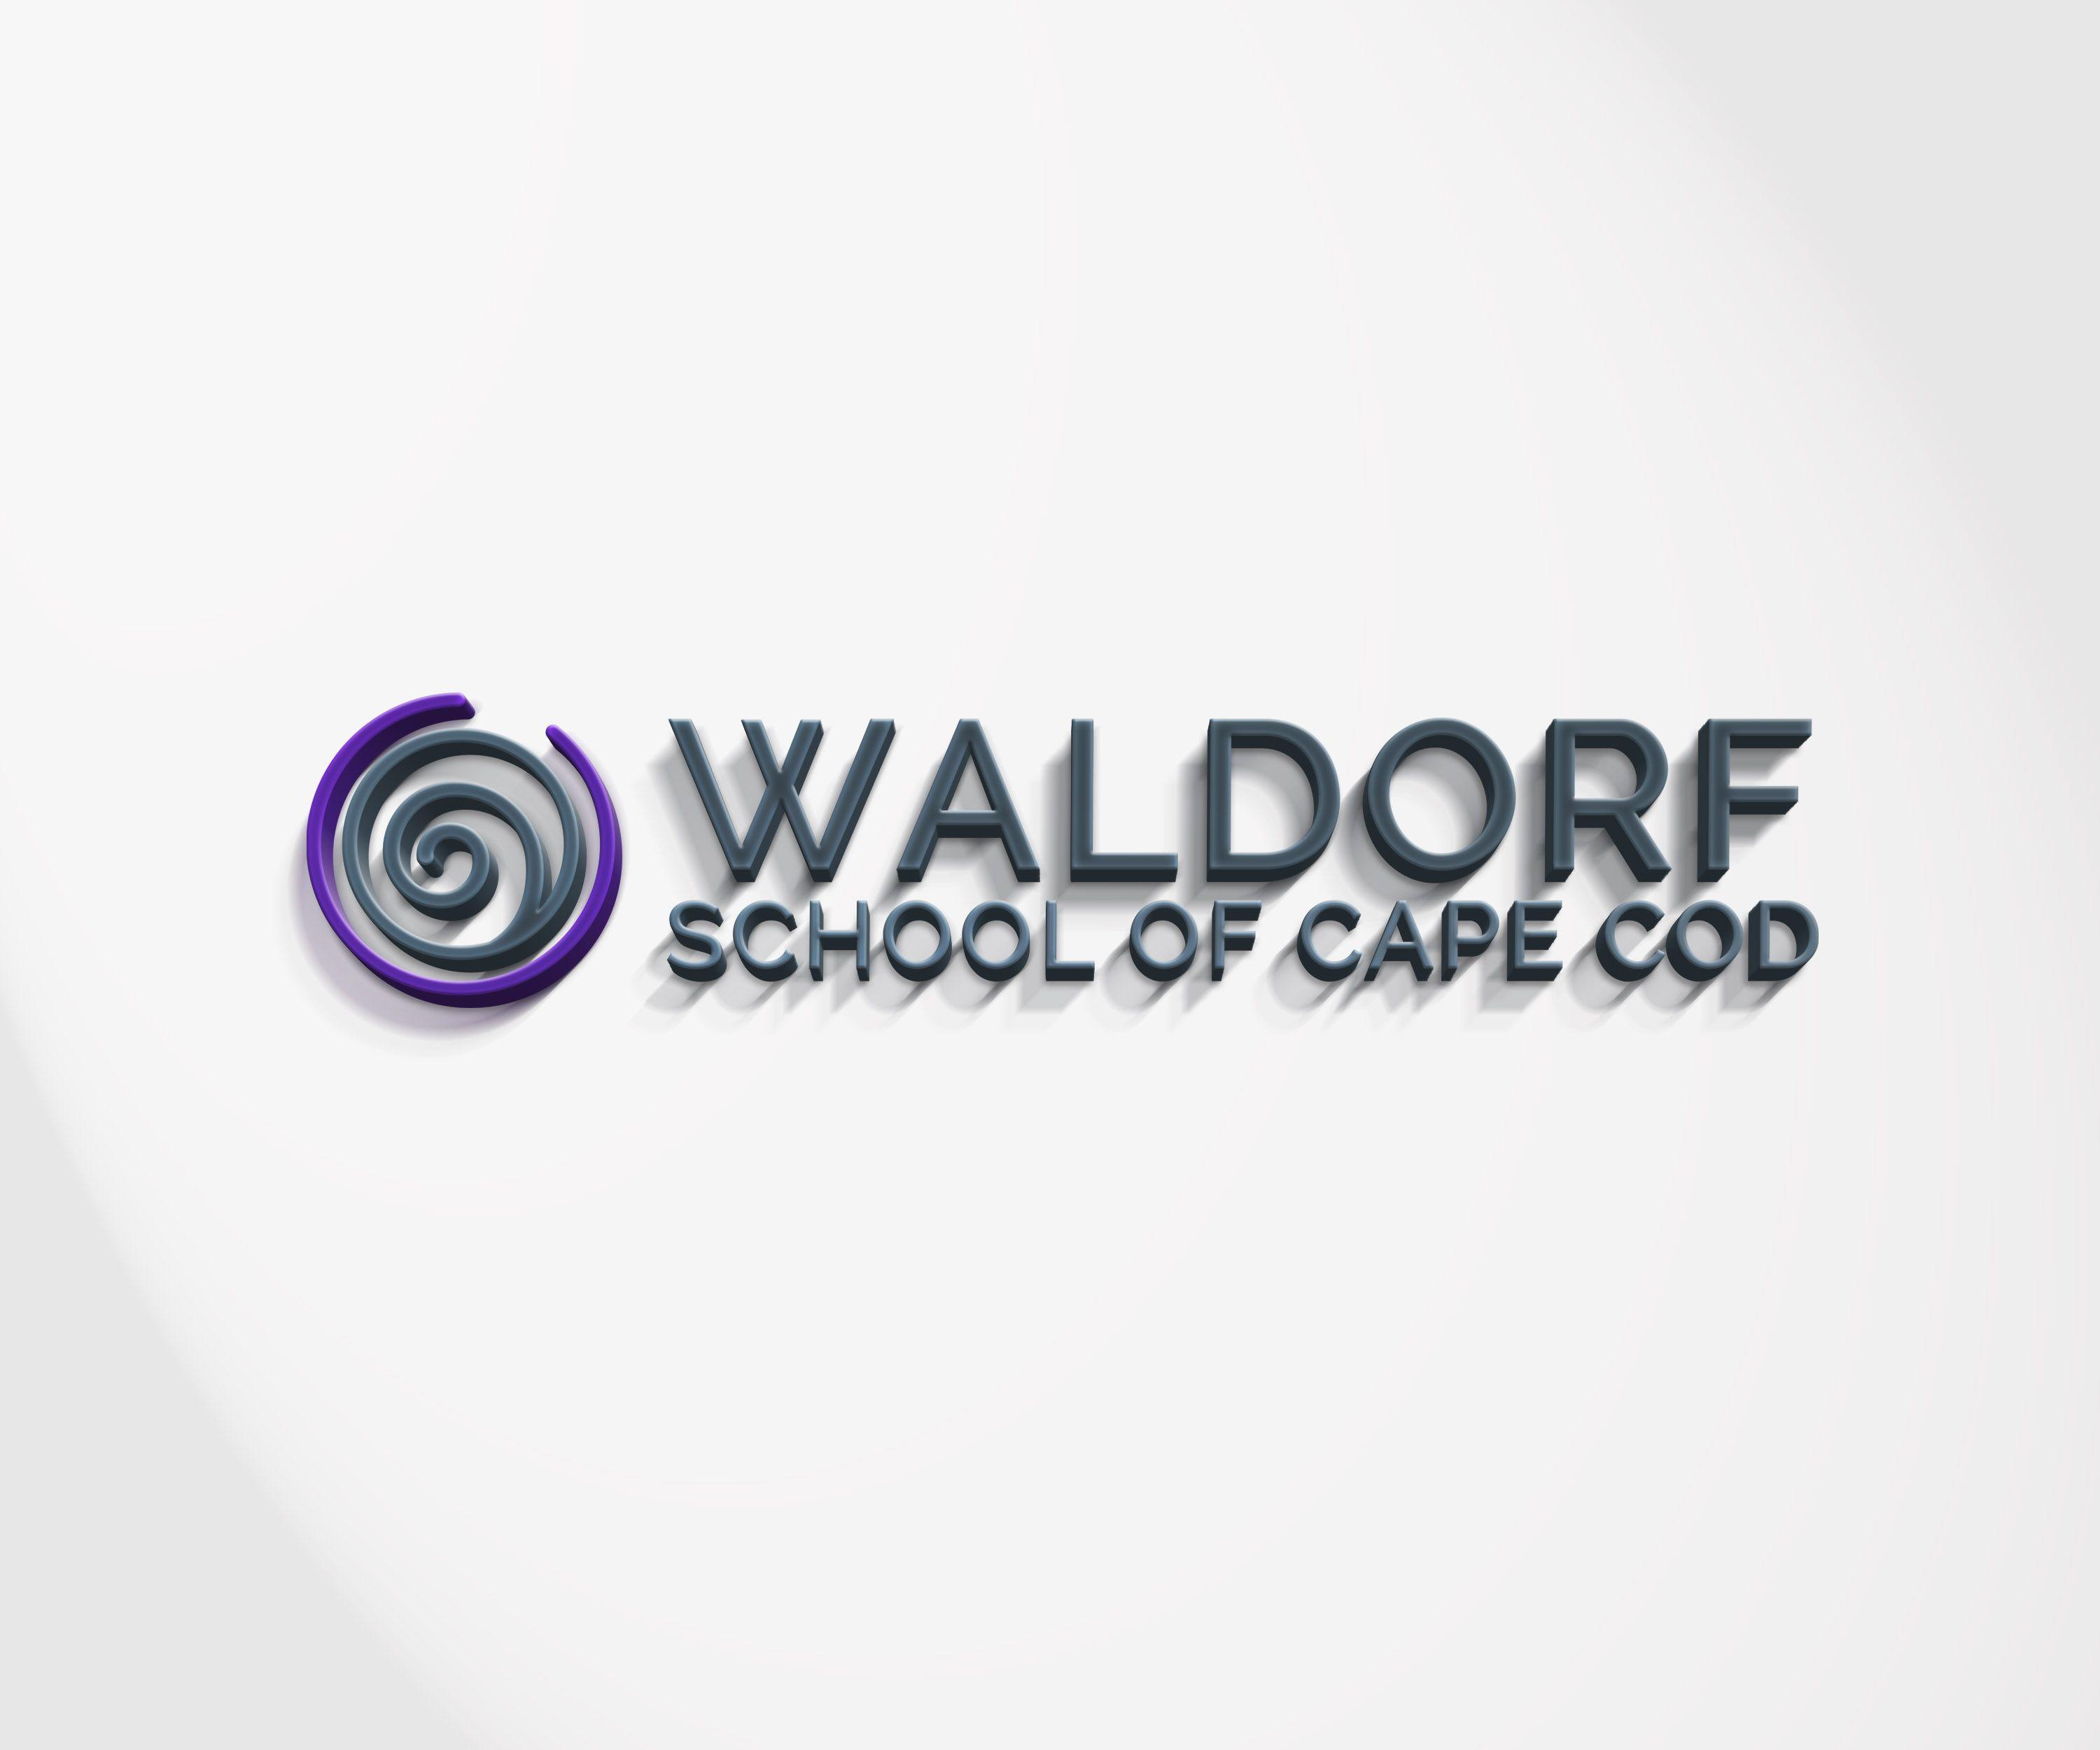 Waldorf Logo - Modern, Colorful, School Logo Design for Waldorf School of Cape Cod